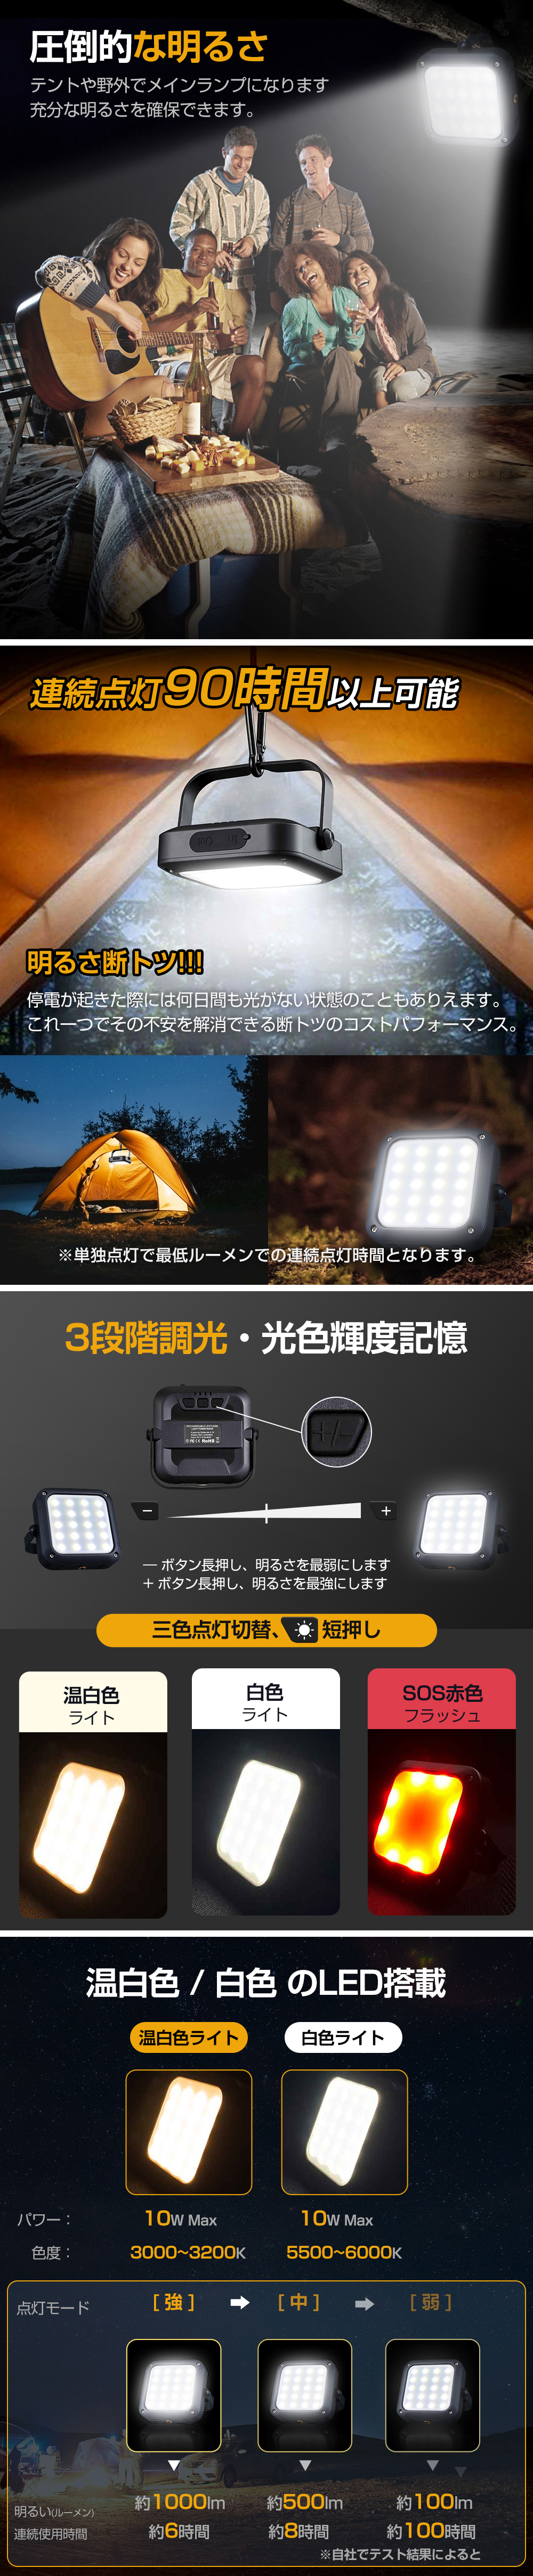  ランタン led 充電式 USB 充電 5000mAh 大容量 LEDランタン アウトドア キャンプ用品 懐中電灯 